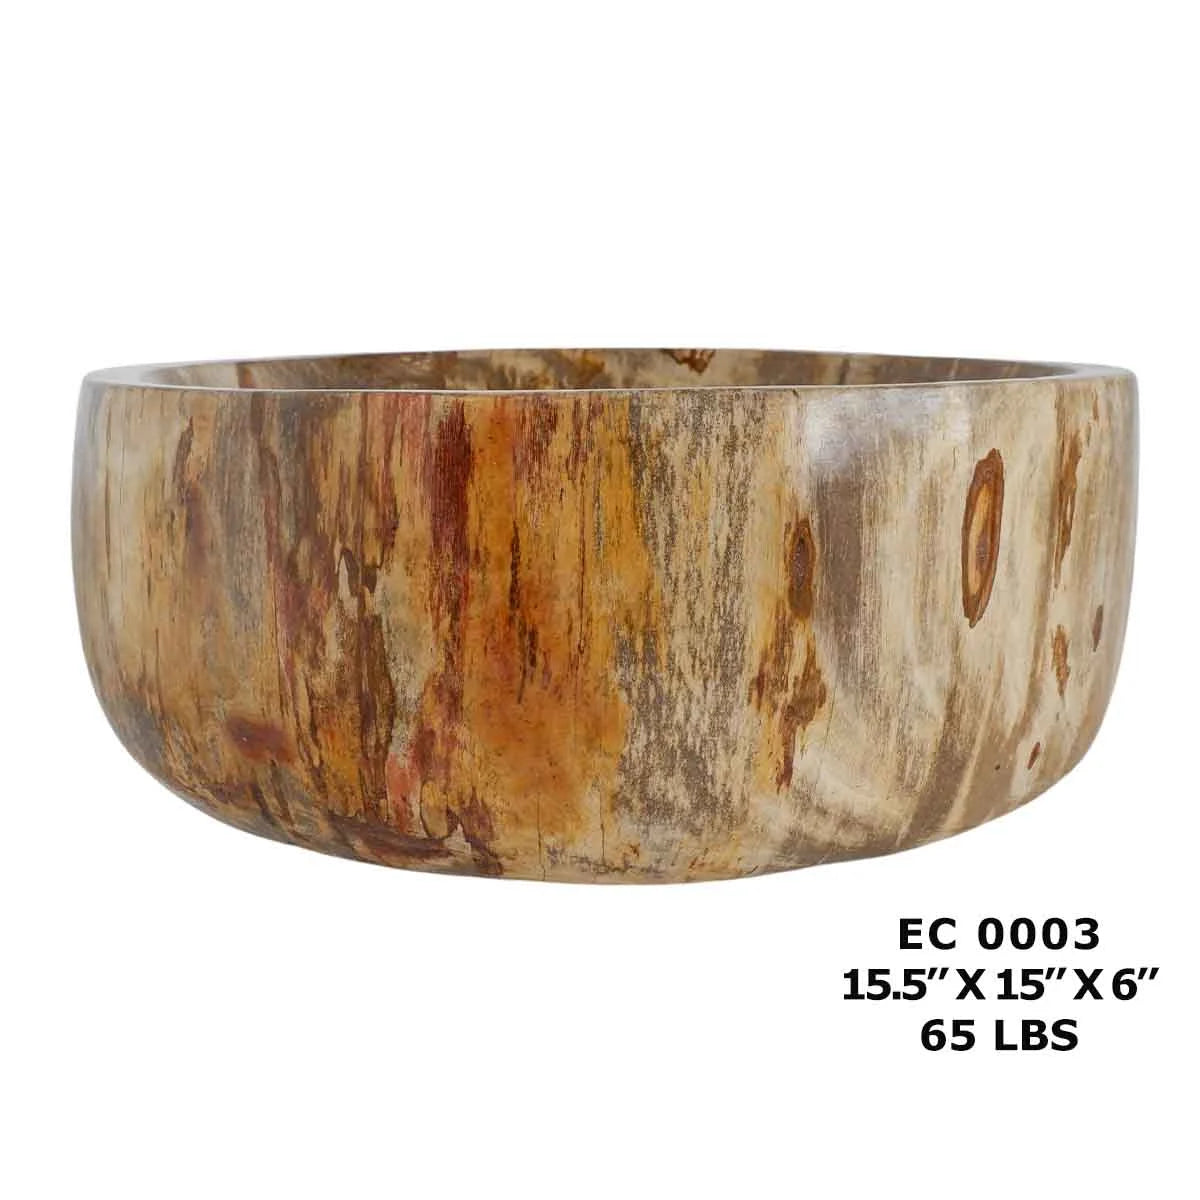 Petrified Wood Sink Bowls for Bathroom, Bowl Sink Vanity EC0003